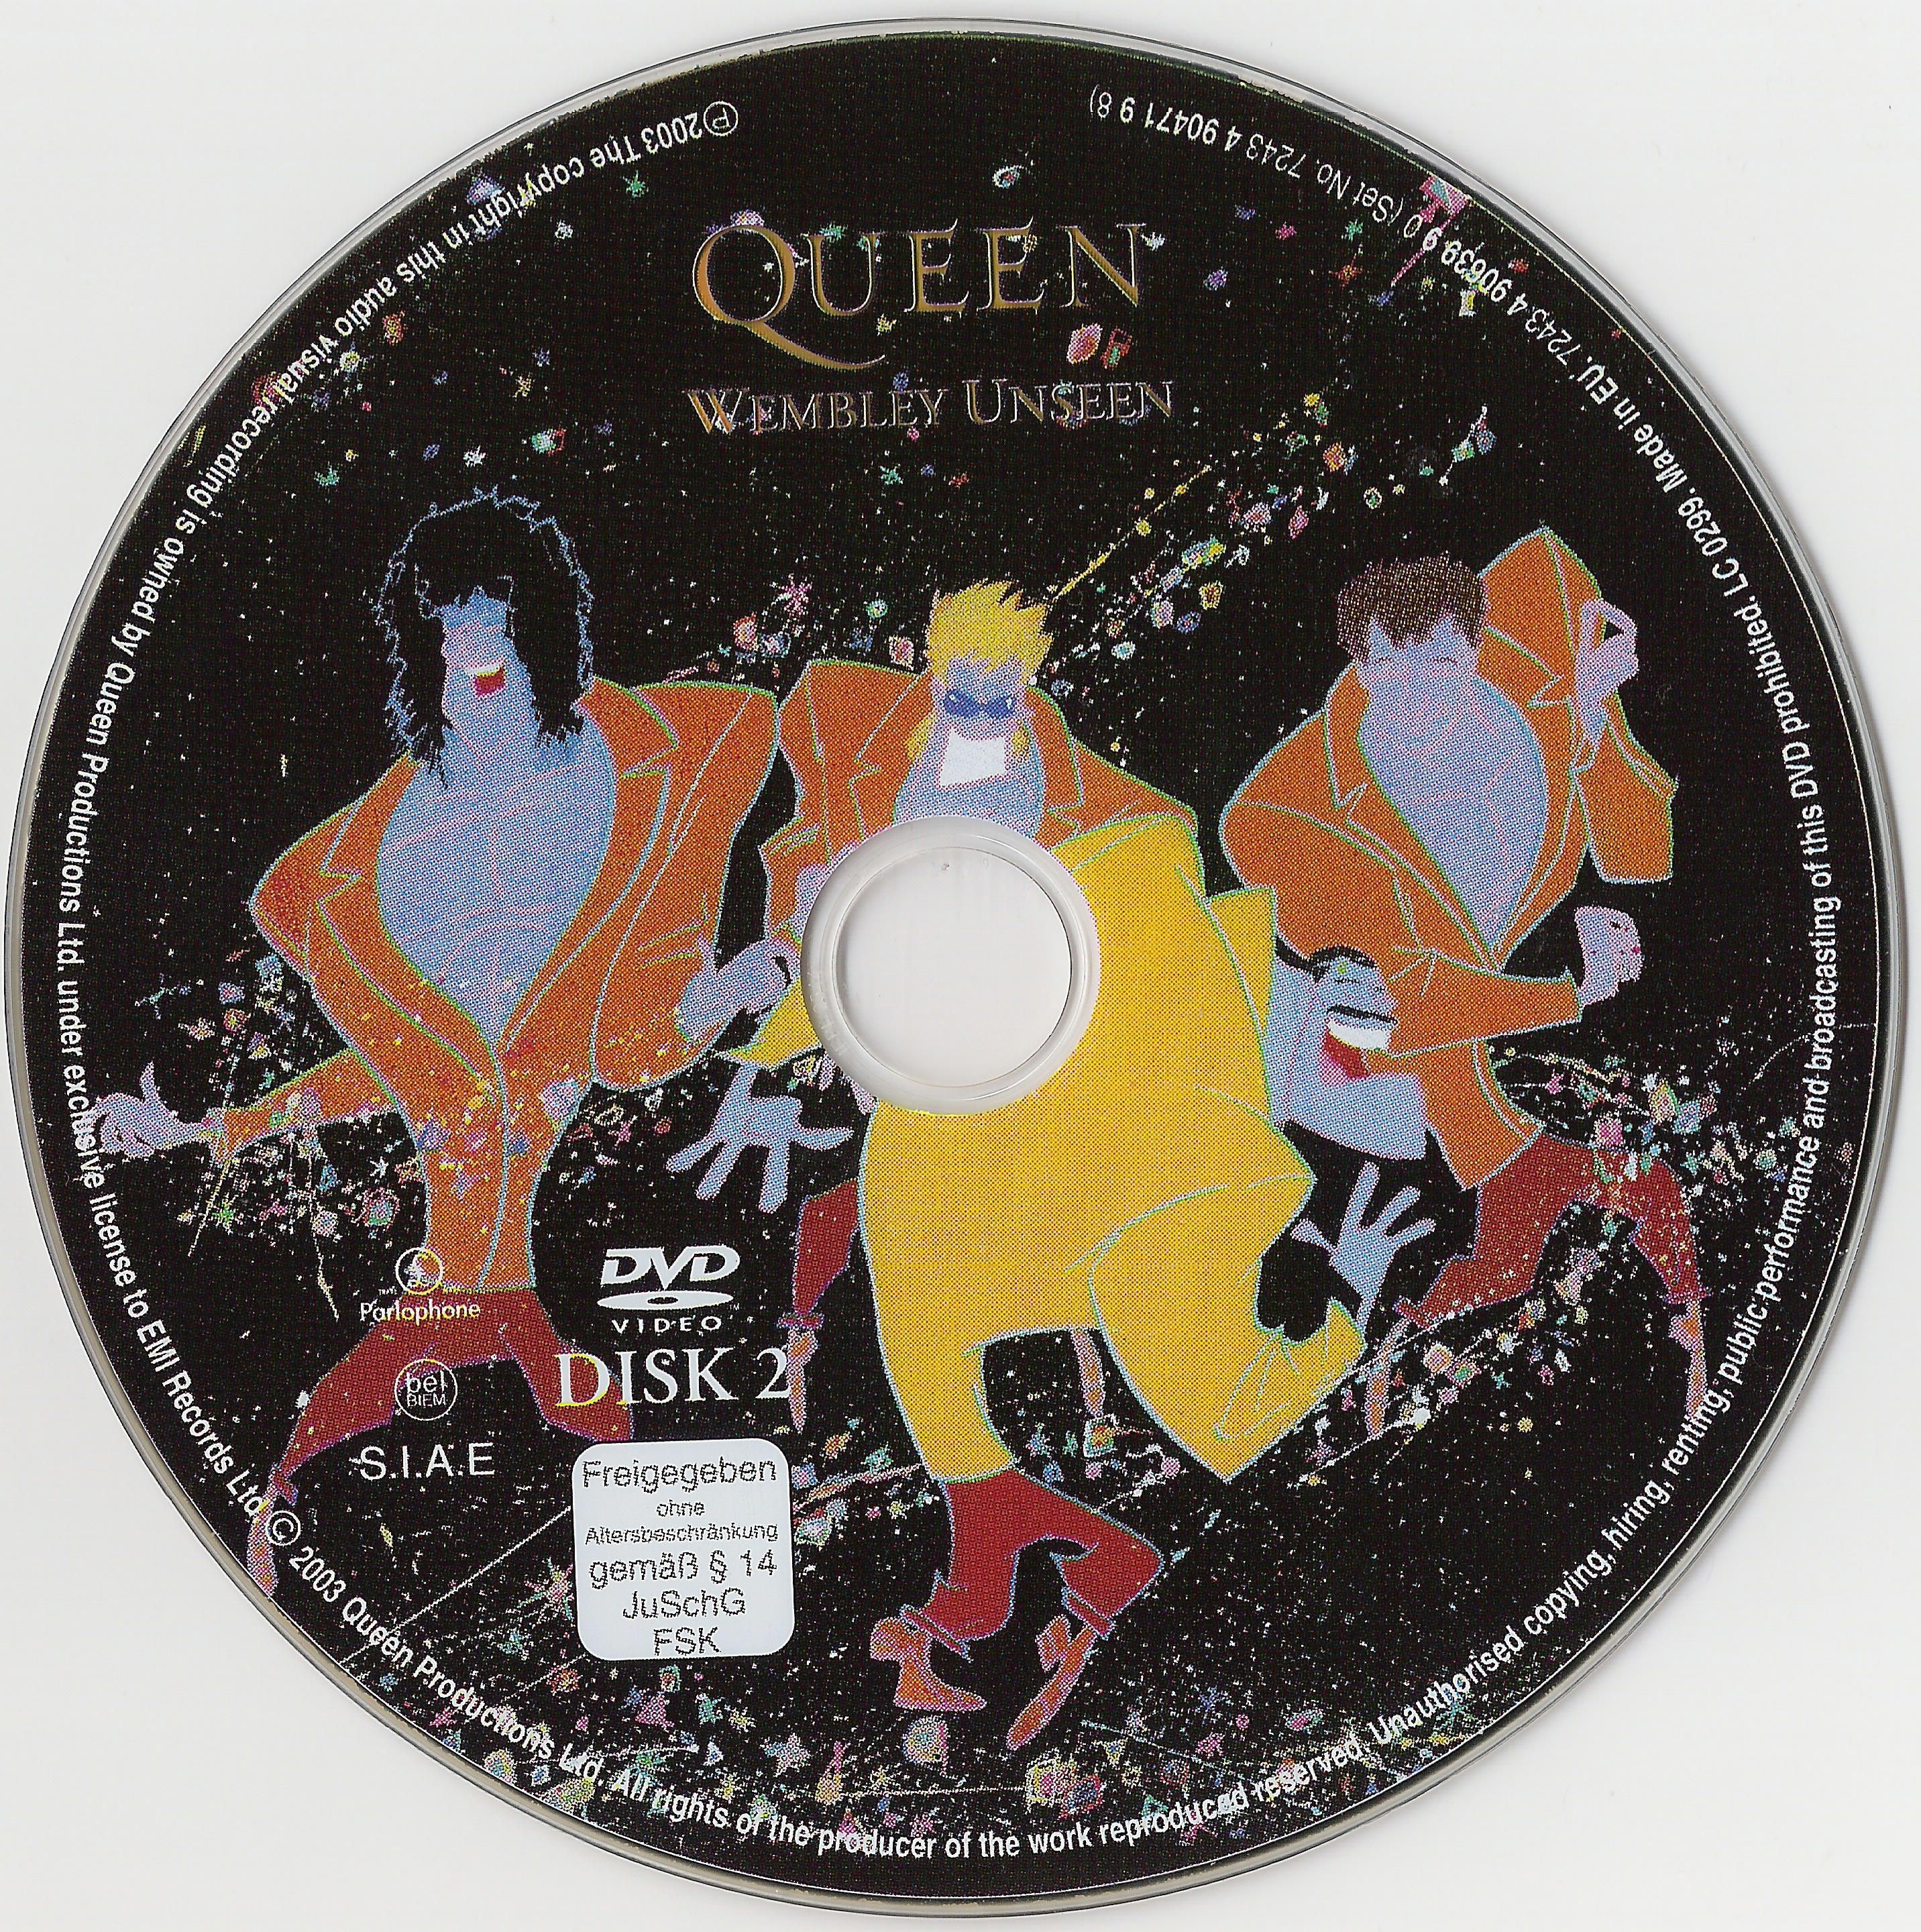 Queen Live at Wembley Stadium DISC 2